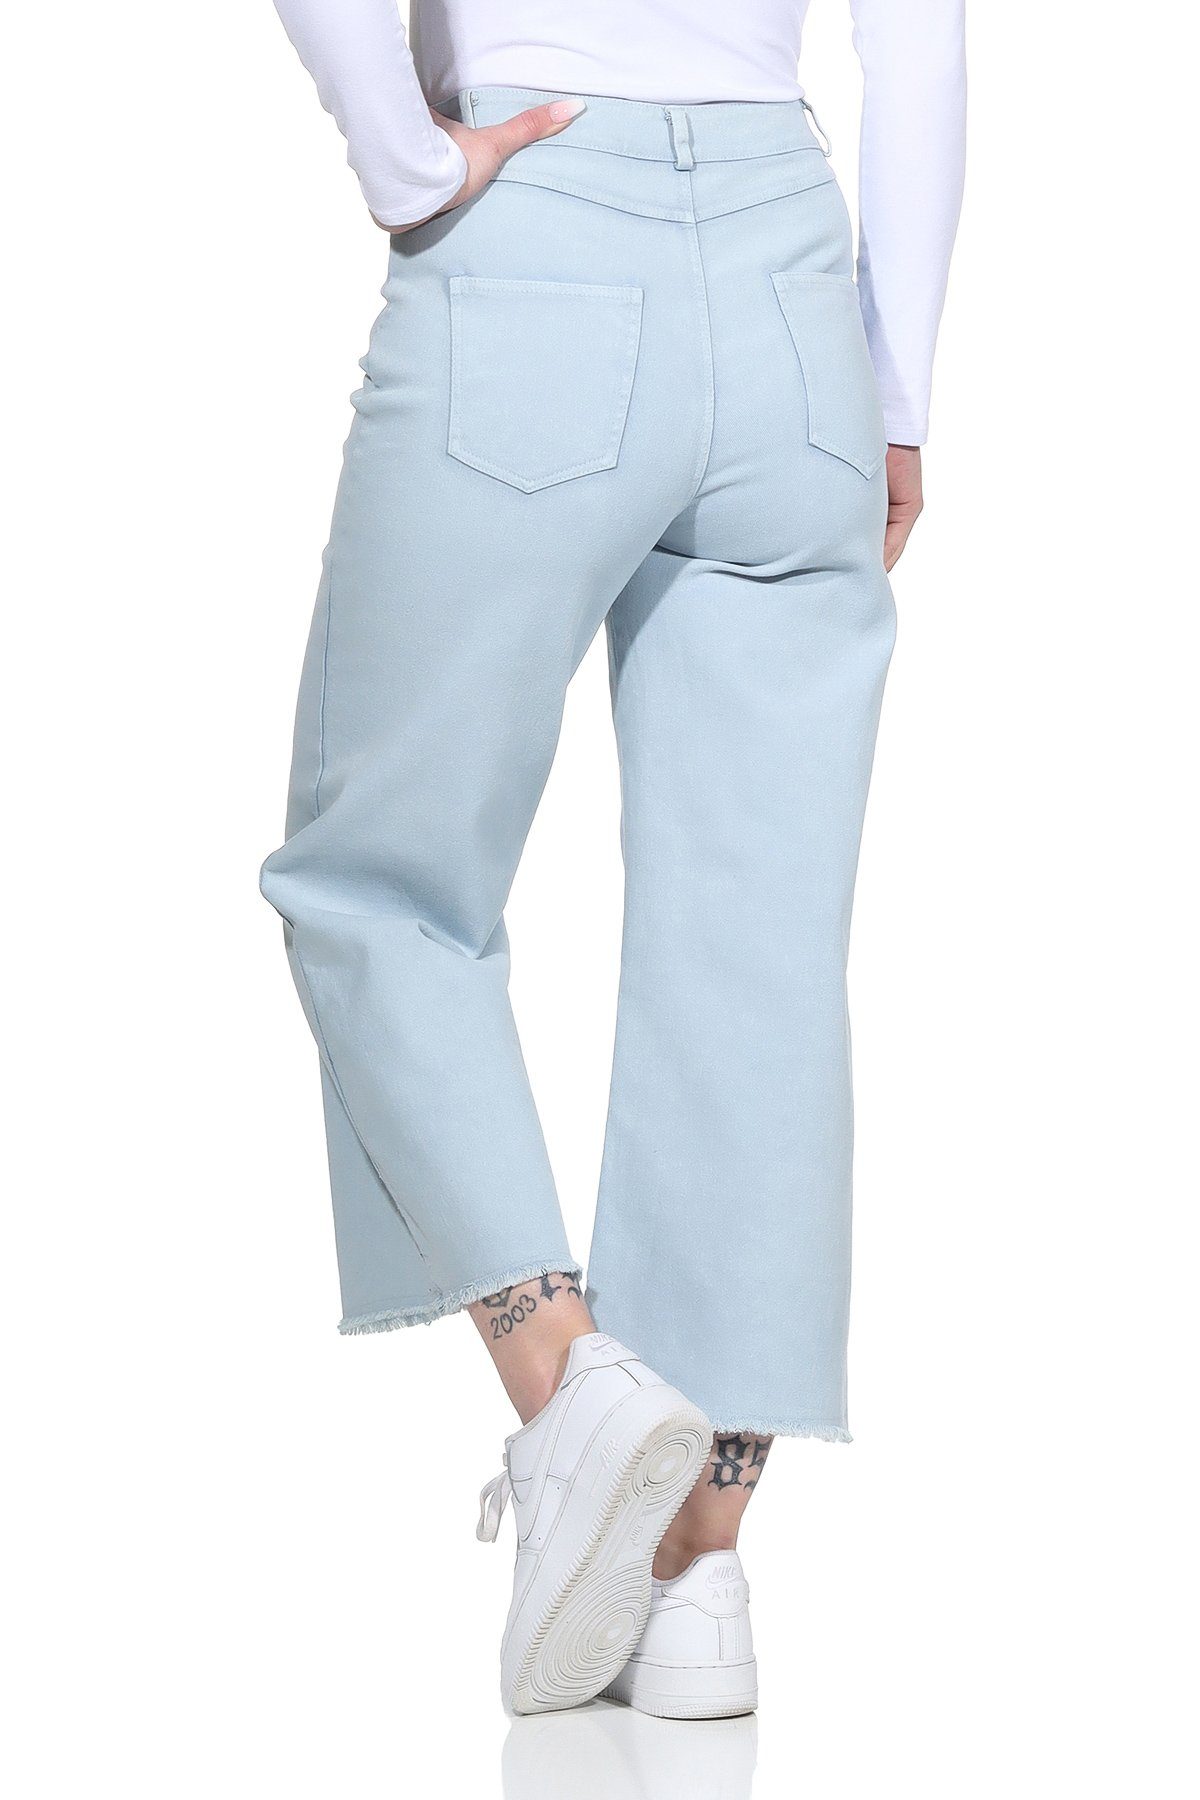 Aurela Damenmode Jeans Weite 100% Gürtelschlaufen, mit knöchelfrei, Damen Wide Hellblau Jeans Baumwolle für Leg Culotte